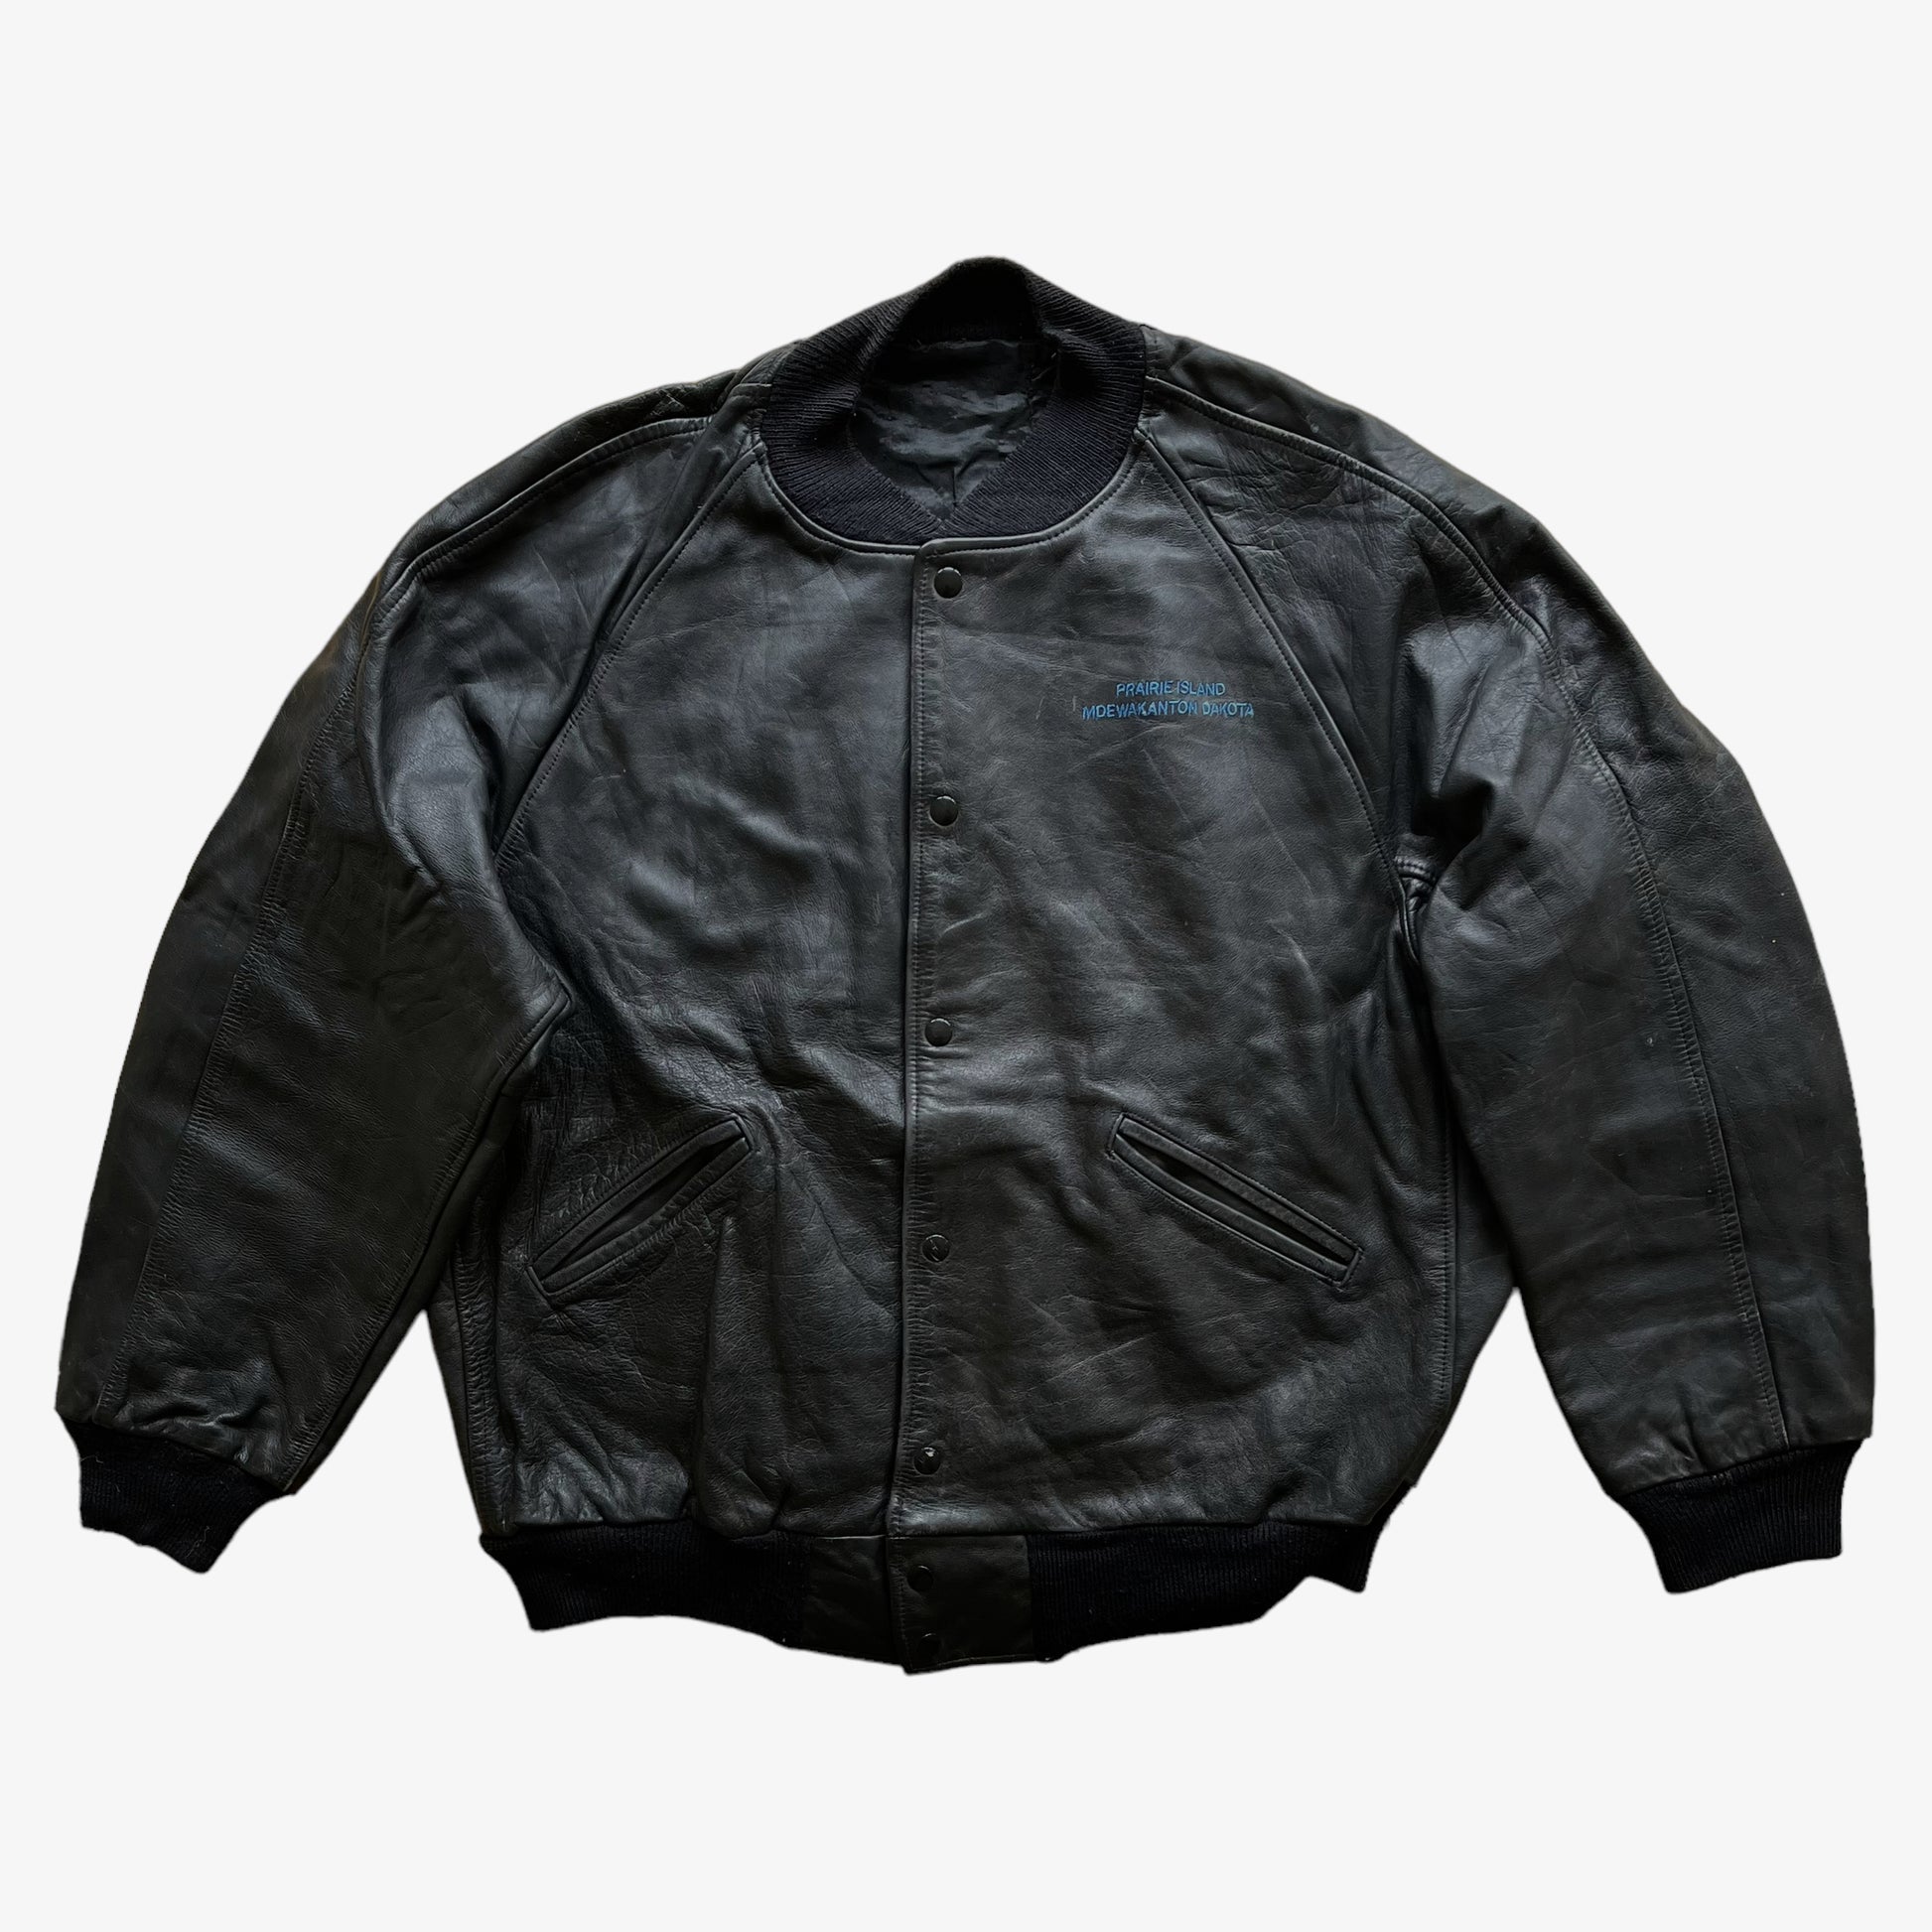 Vintage 90s Praire Island Mdewakanton Dakota Leather Jacket - Casspios Dream